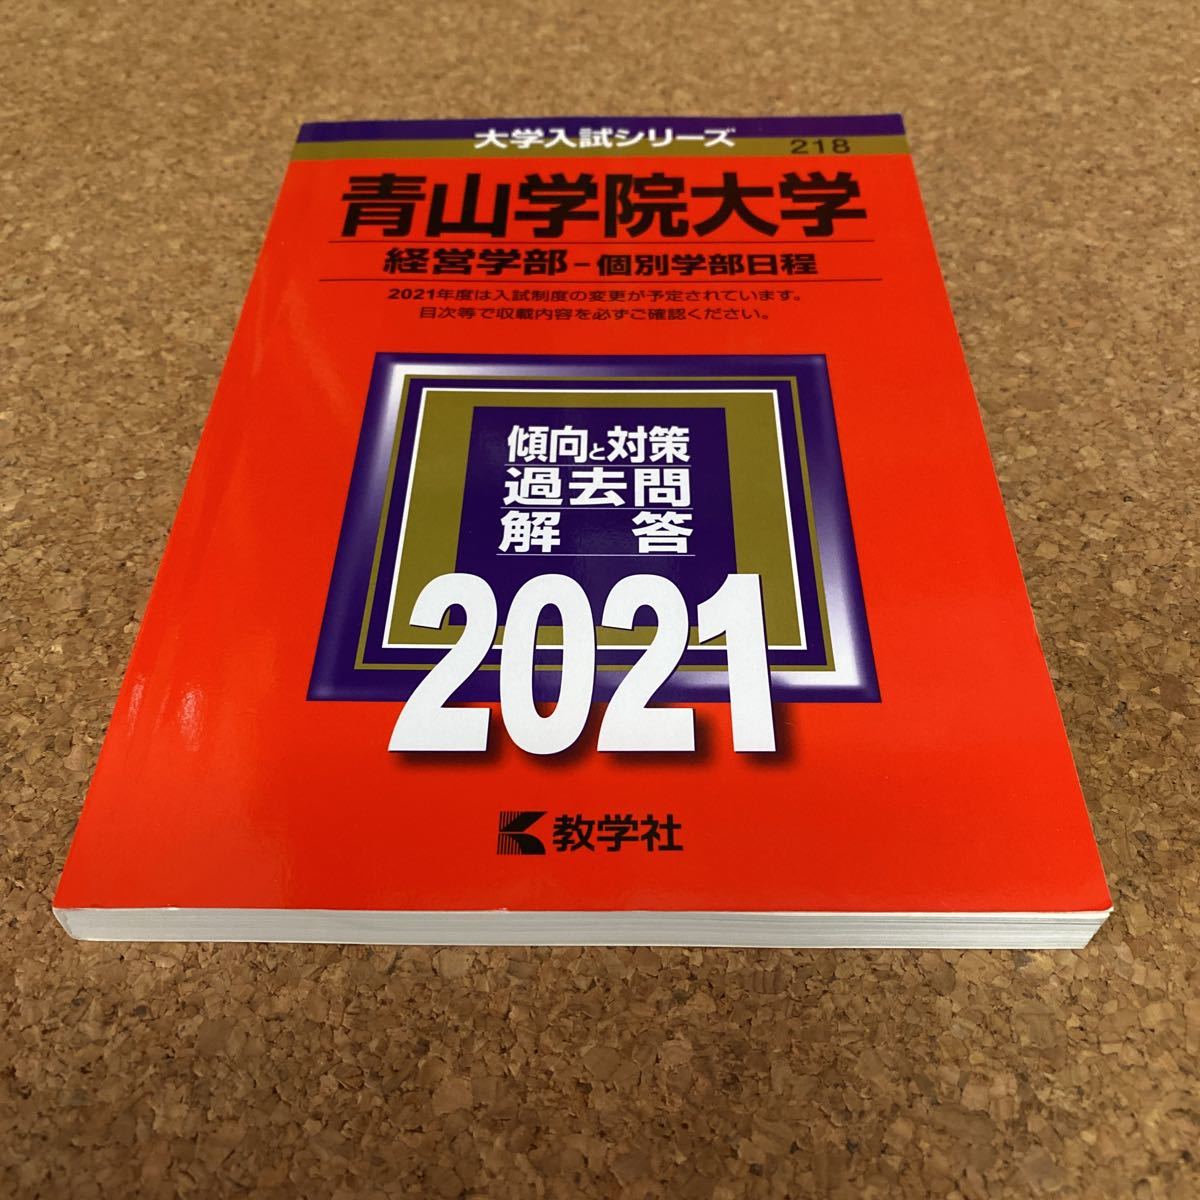 2406 青山学院大学 (経営学部−個別学部日程) (2021年版大学入試シリーズ)